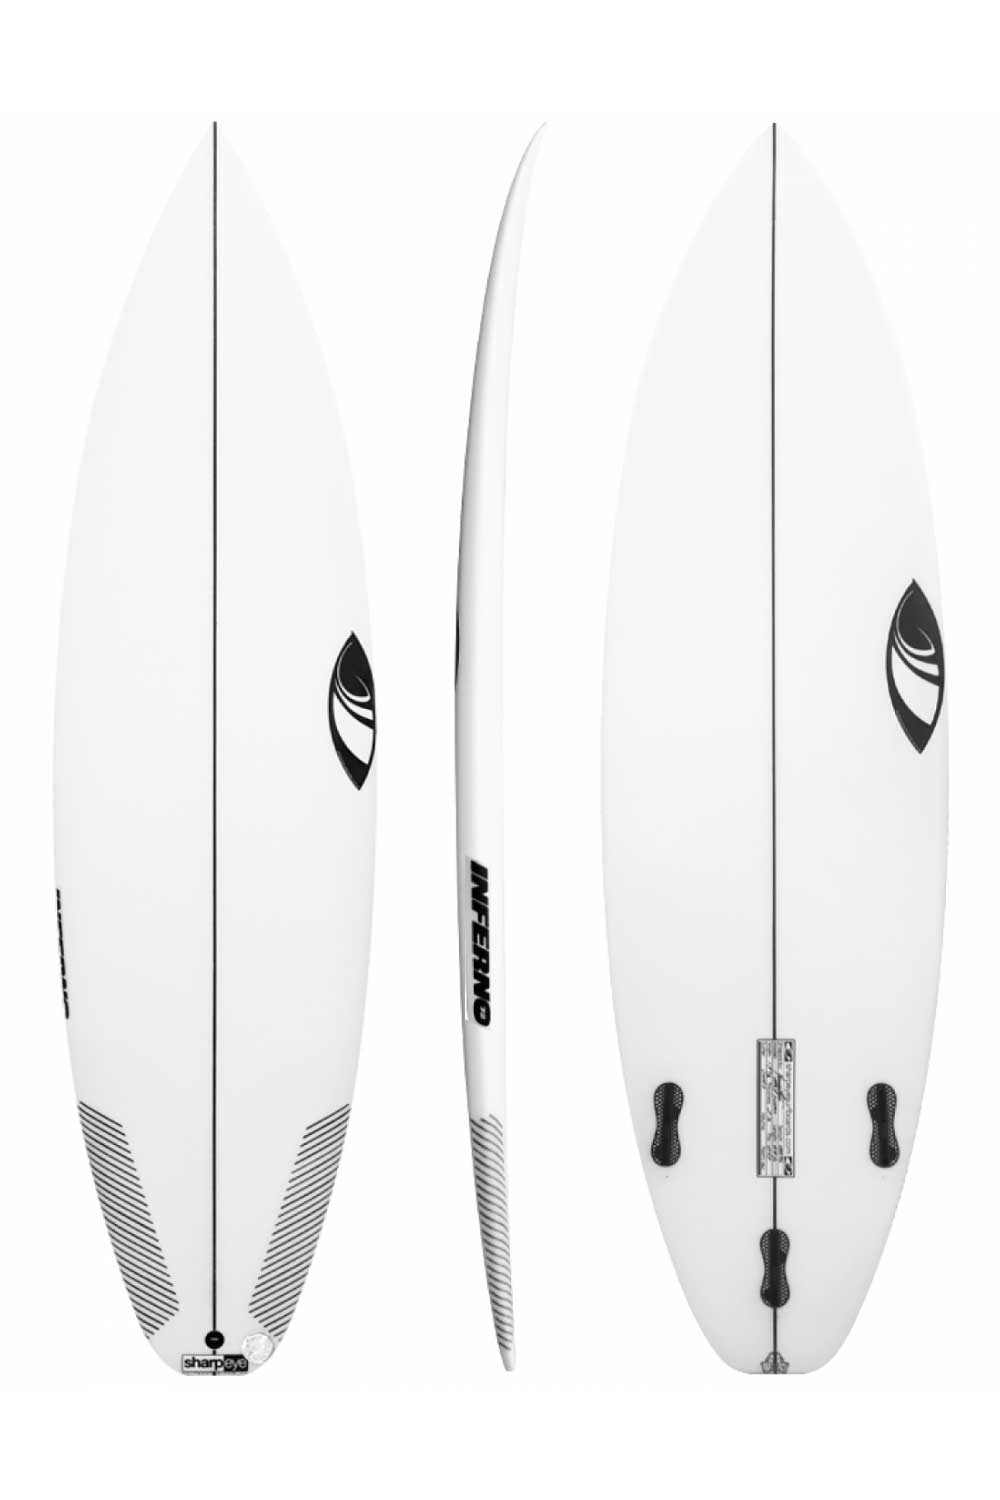 Sharp Eye Inferno 72 5'8" Surfboard